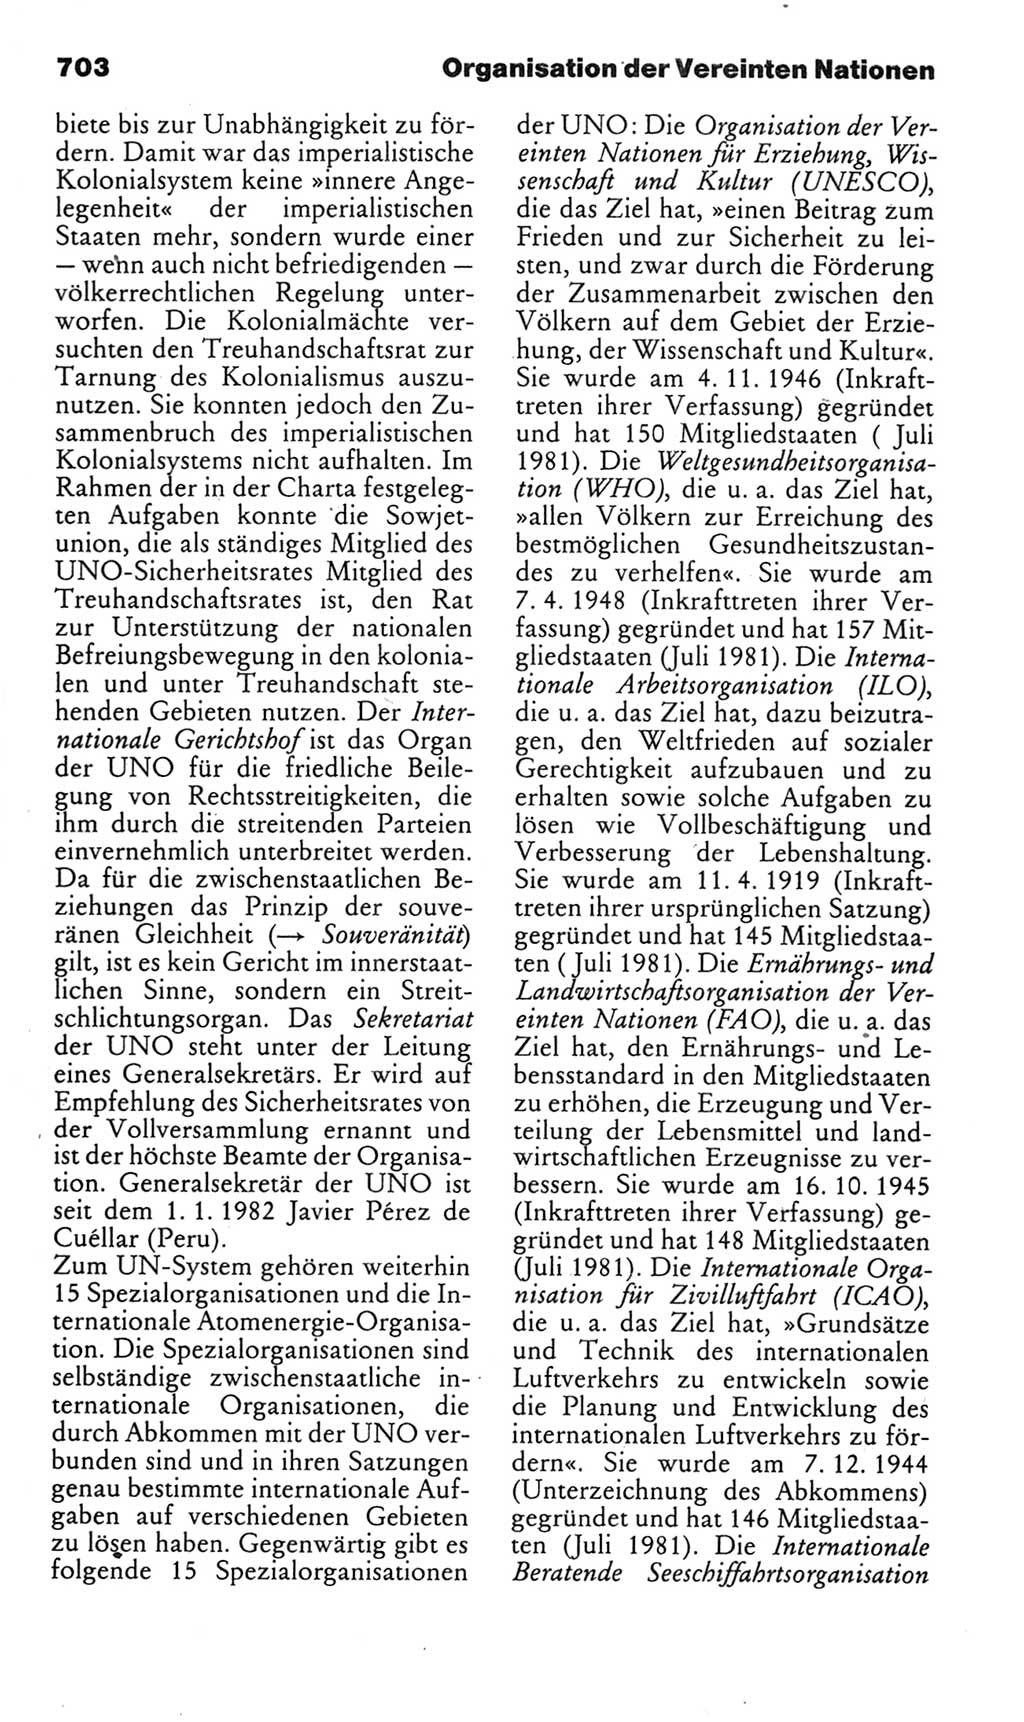 Kleines politisches Wörterbuch [Deutsche Demokratische Republik (DDR)] 1985, Seite 703 (Kl. pol. Wb. DDR 1985, S. 703)